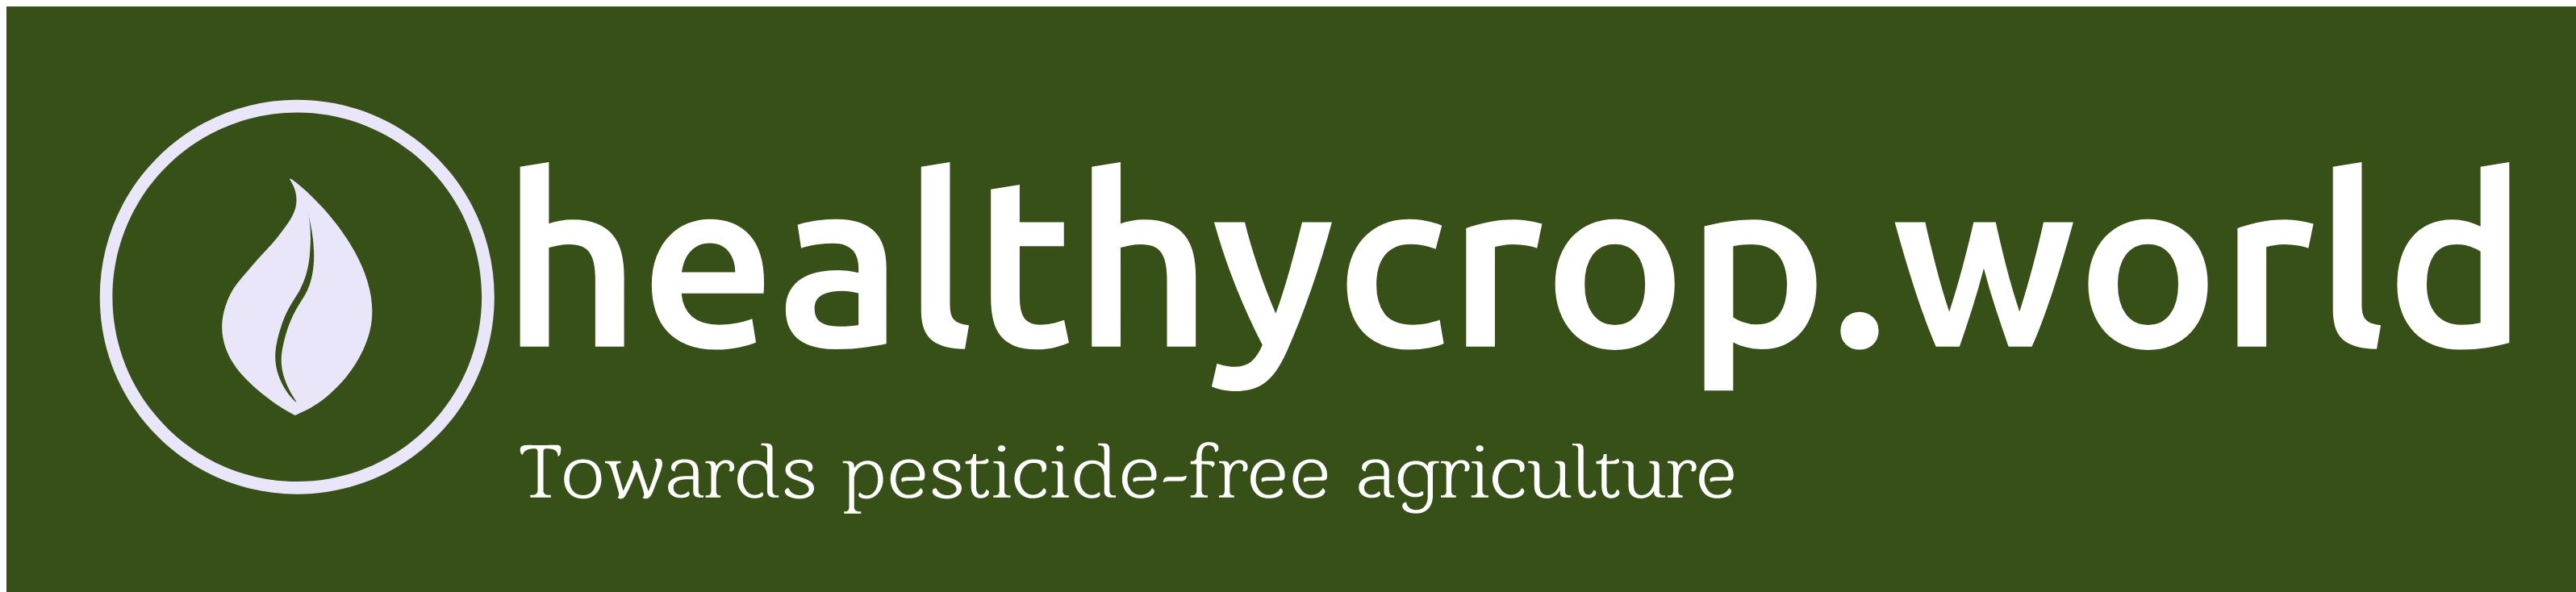 Heatthy crop Logo